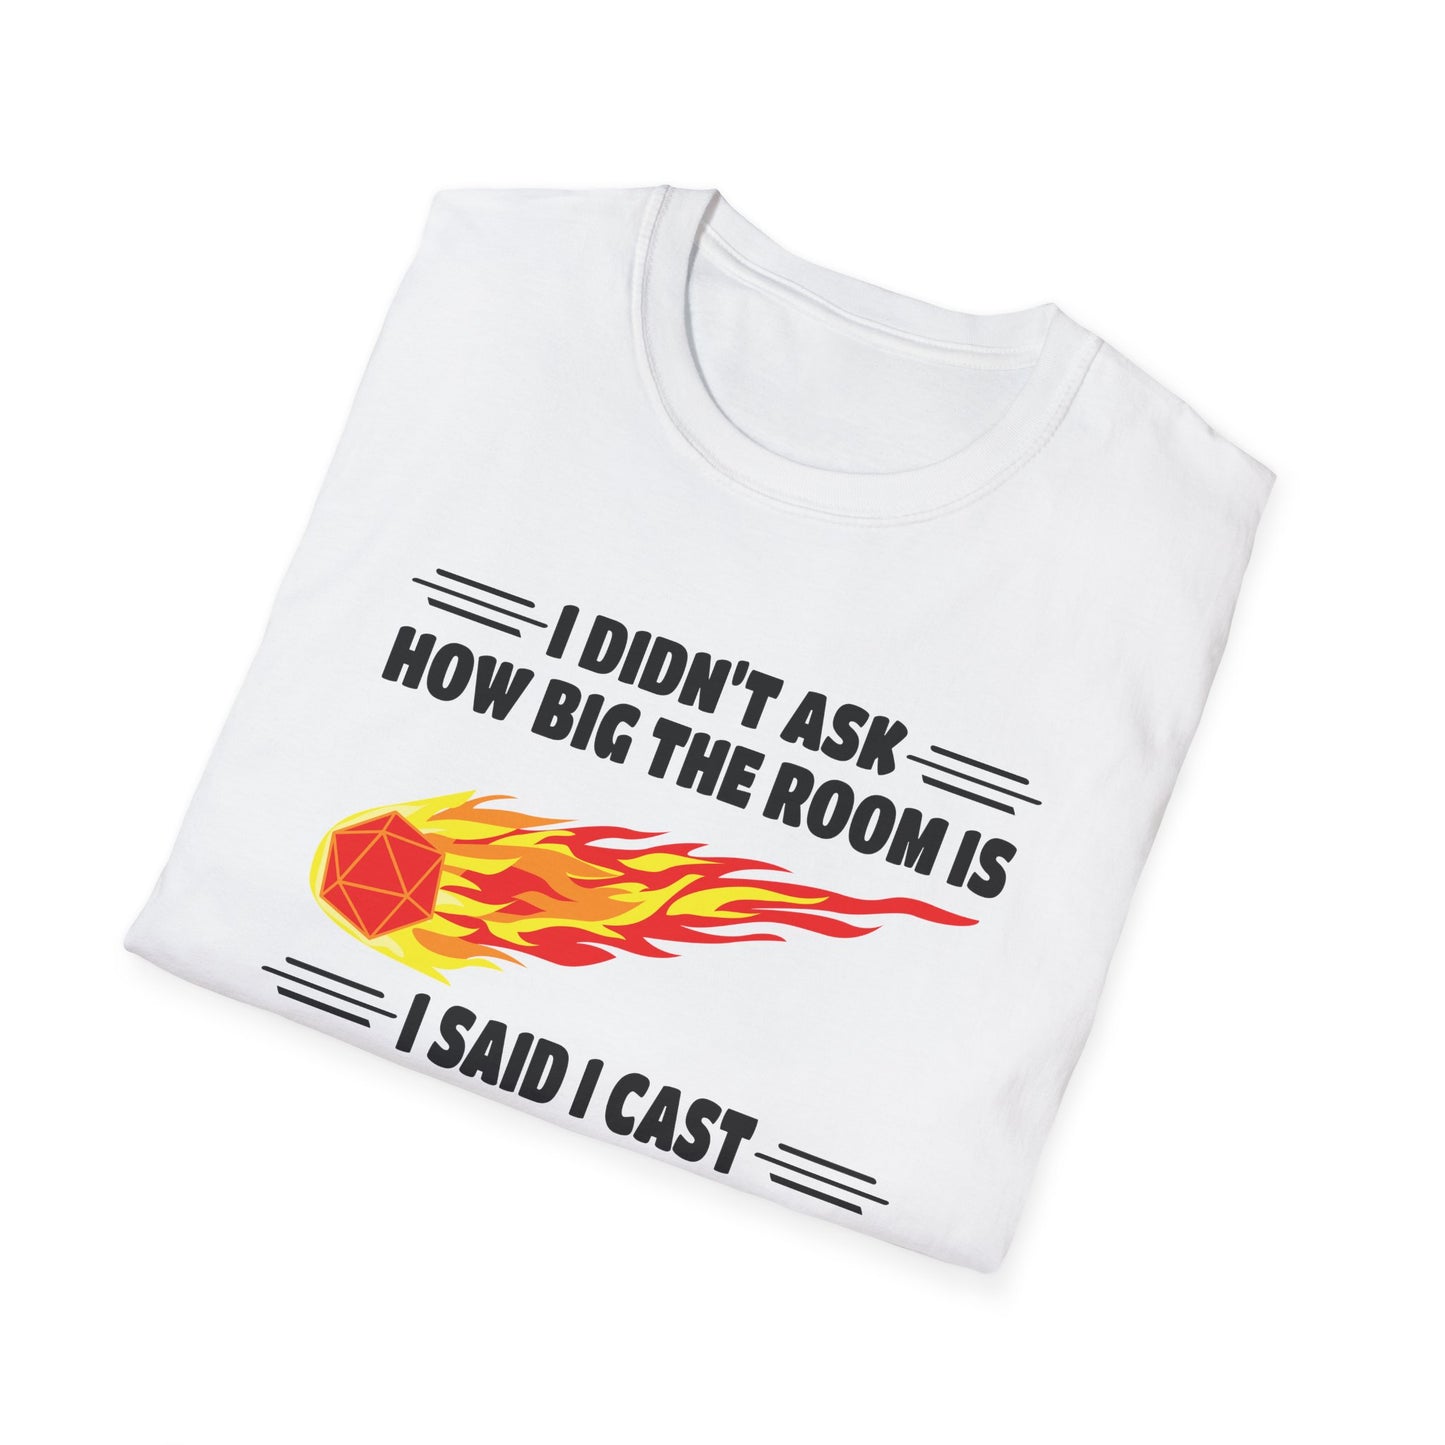 I Cast Fireball DnD Roleplaying - Gildan Unisex Softstyle T-Shirt